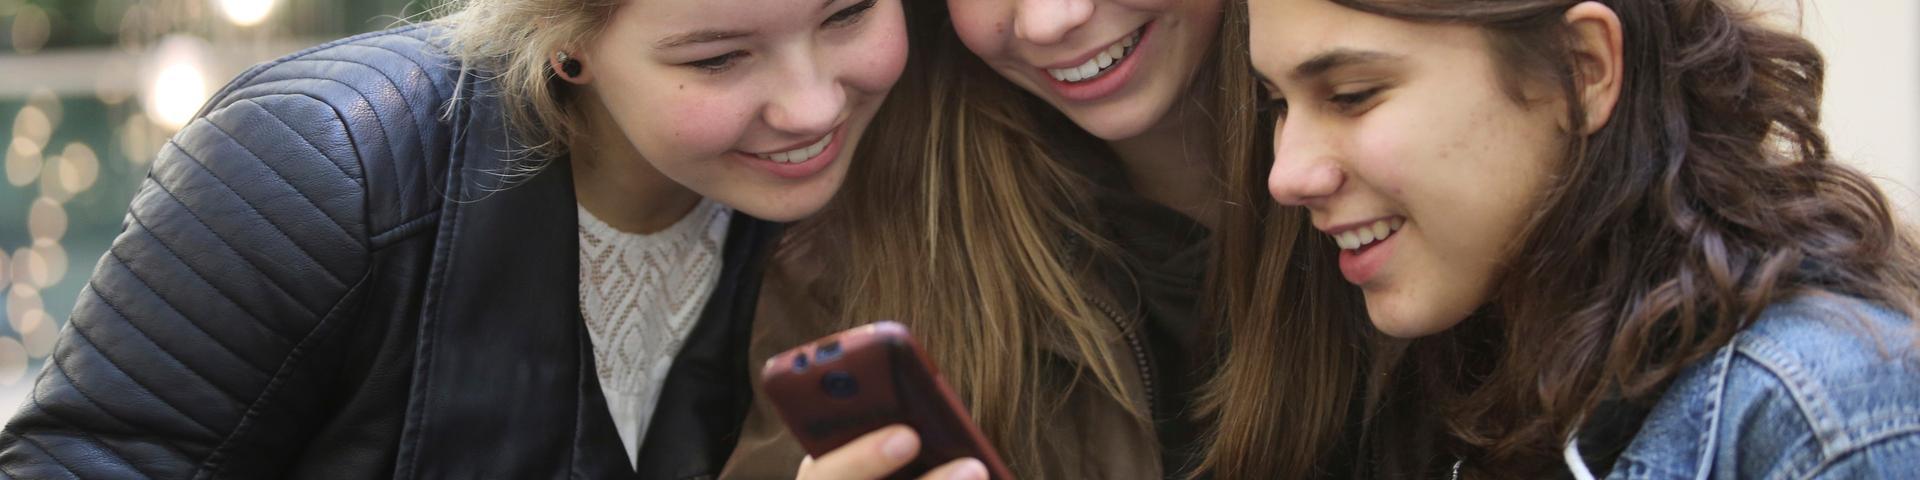 3 meisjes kijken samen naar een mobiele telefoon